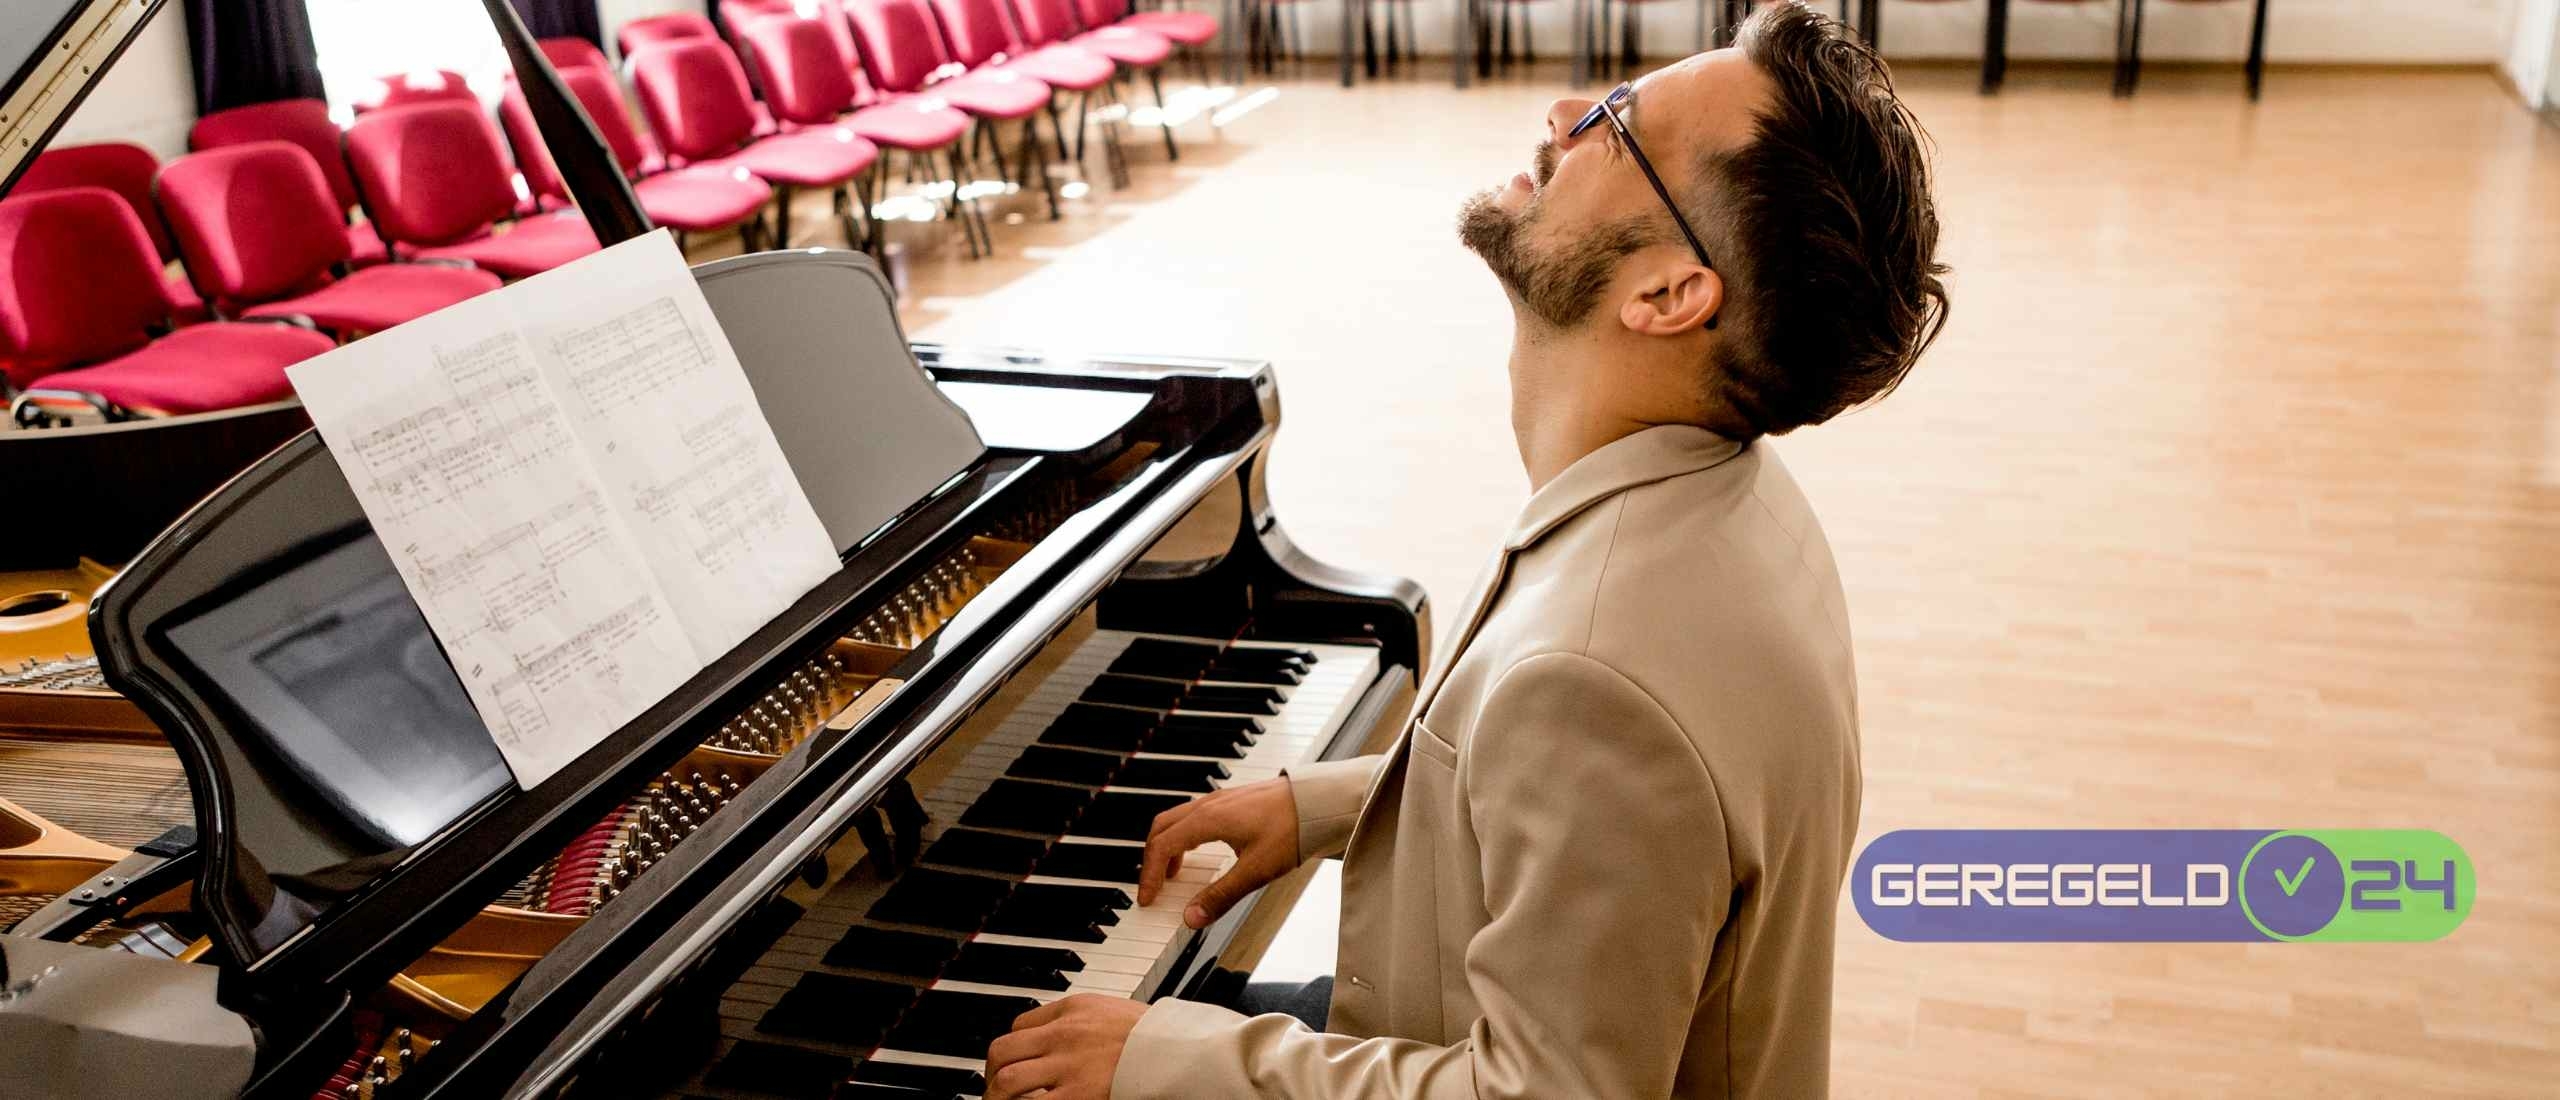 Hoe de verschillende klanken van een piano je stemming beïnvloeden